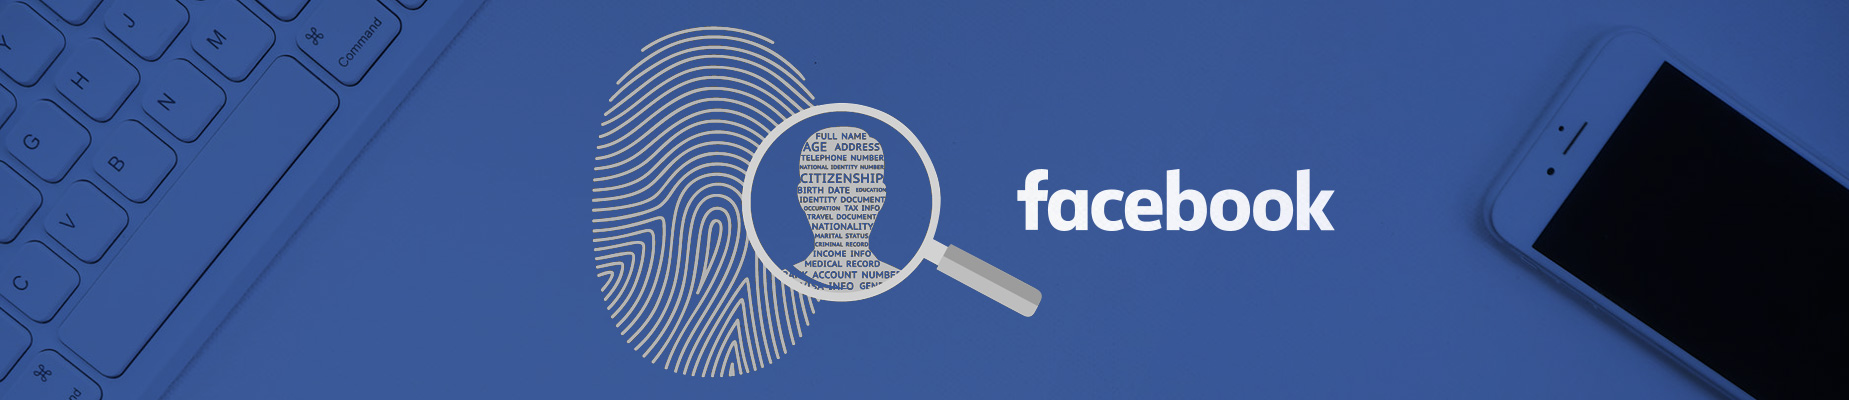 Avoid Identity Theft on Facebook: 4 great tips